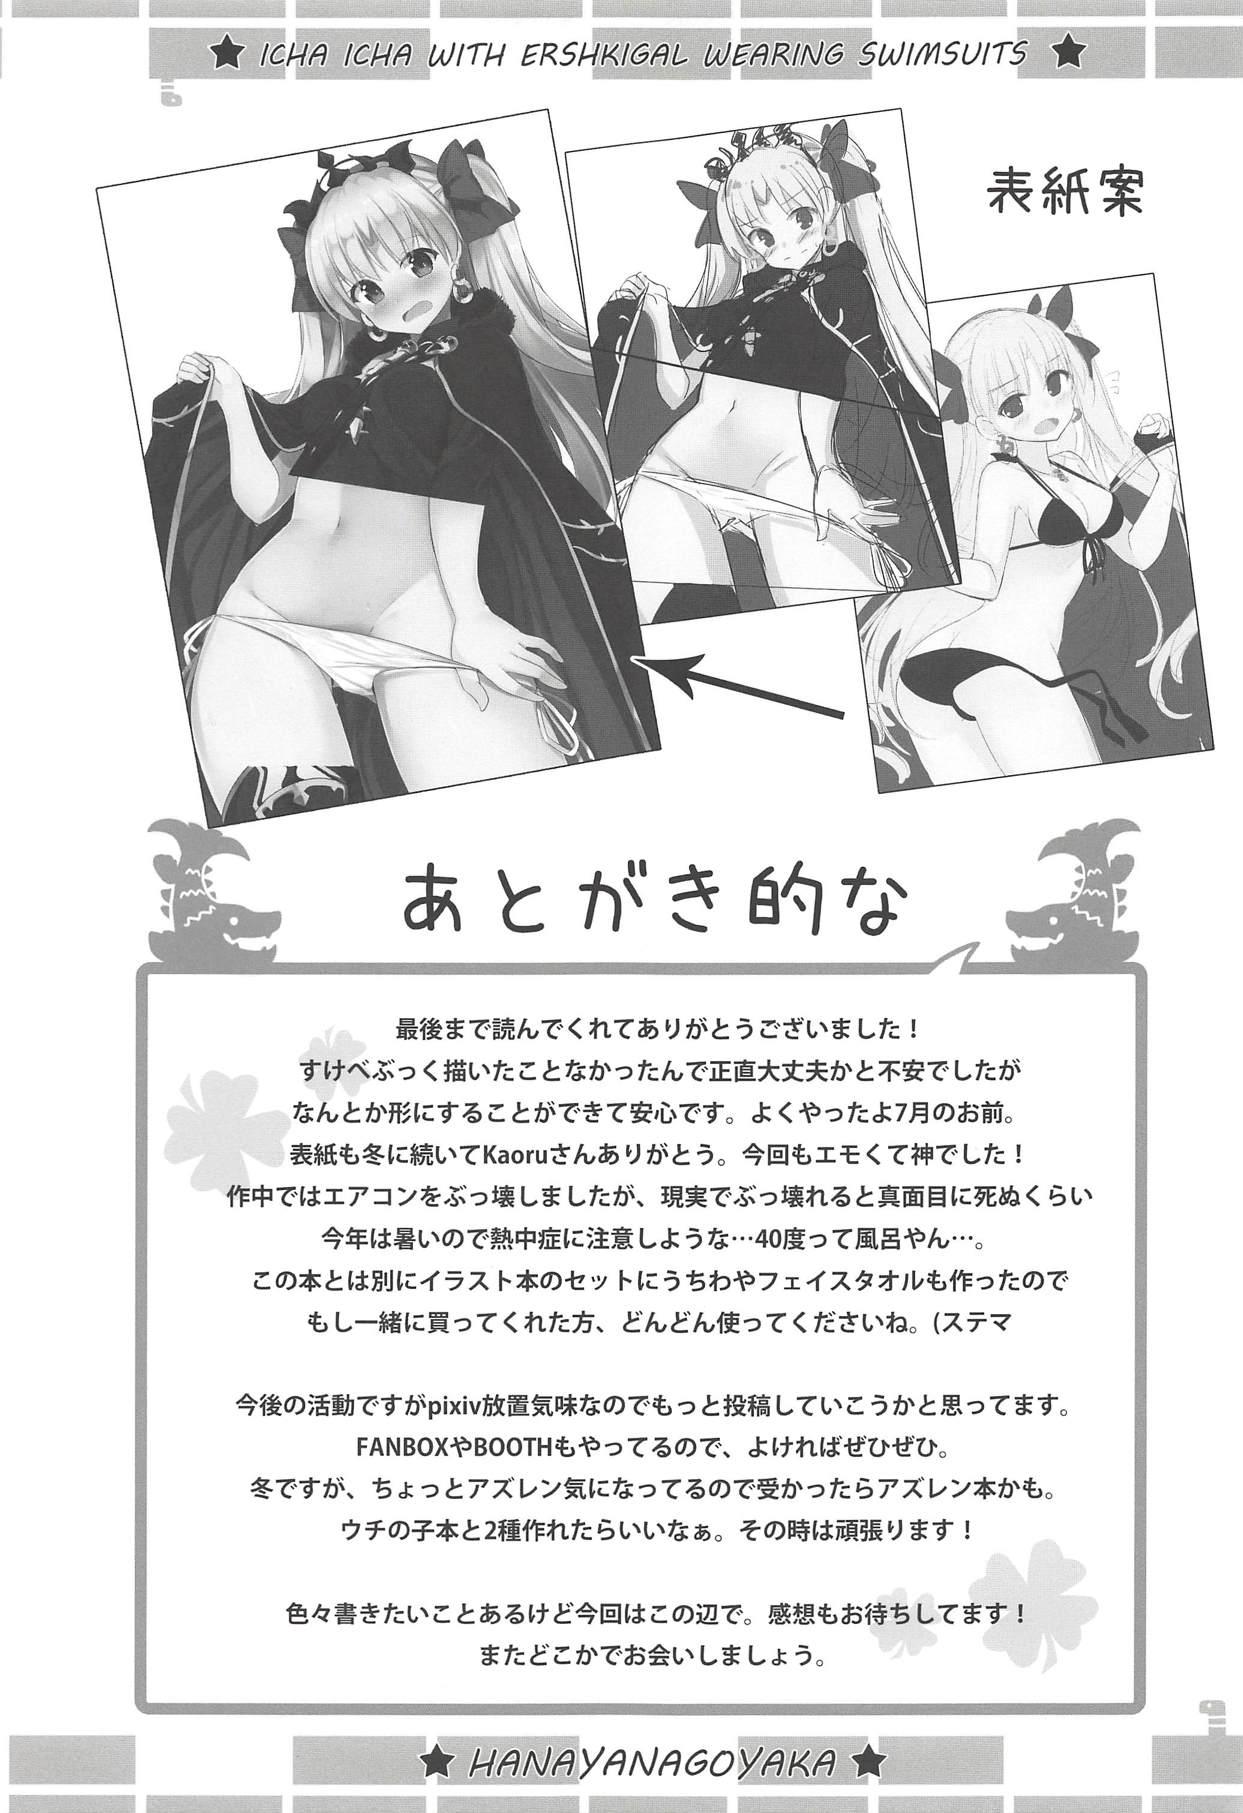 Mizugi no Ereshkigal to Icha Tsukitai! - Icha Icha with Ereshkigal Wearing Swimsuits. 23